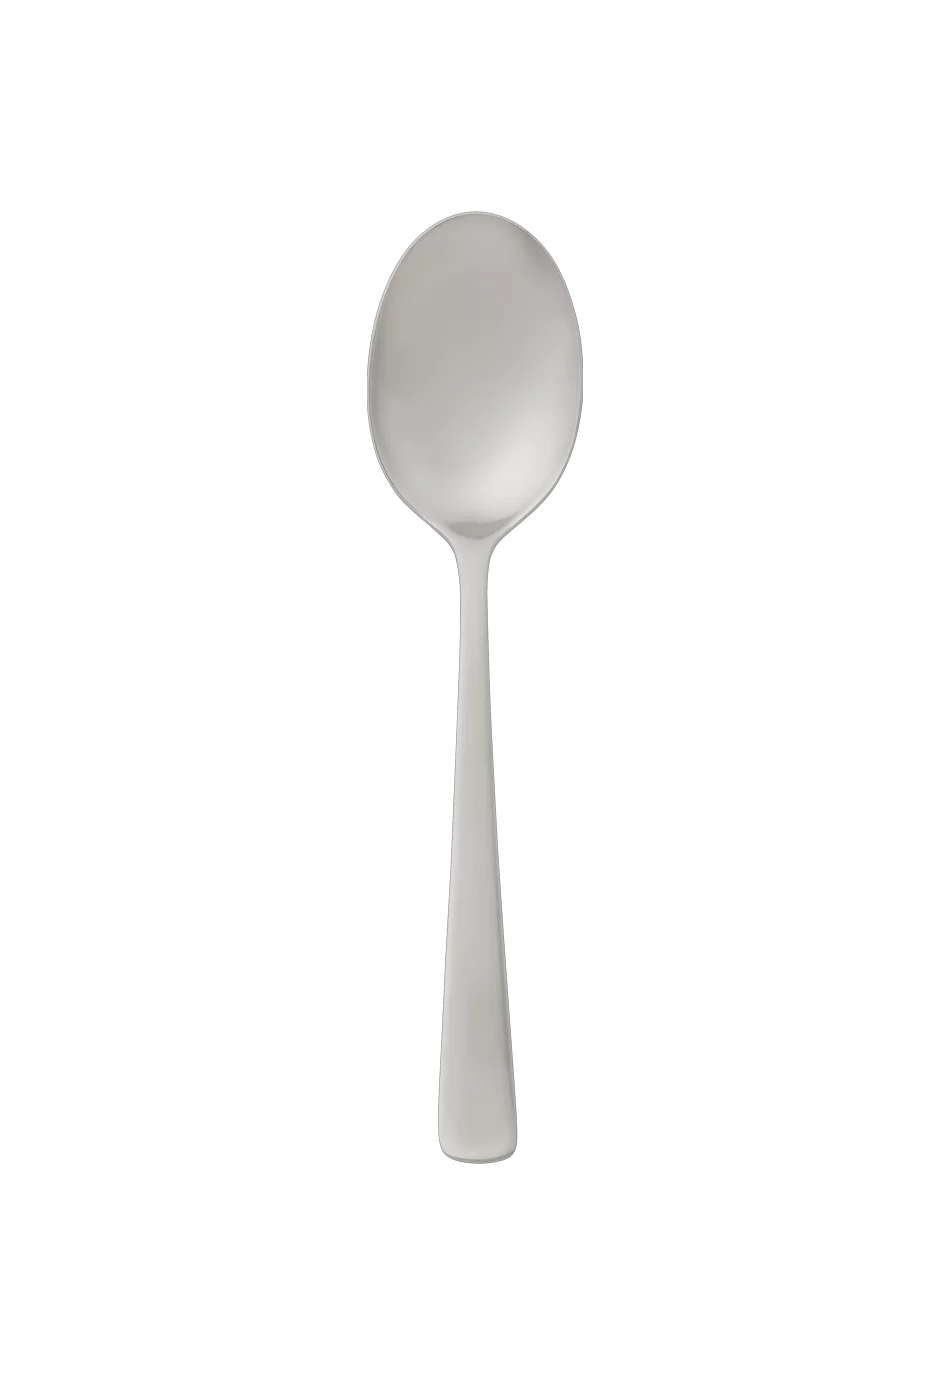 Atlantic Menu Spoon (18/8 stainless steel)